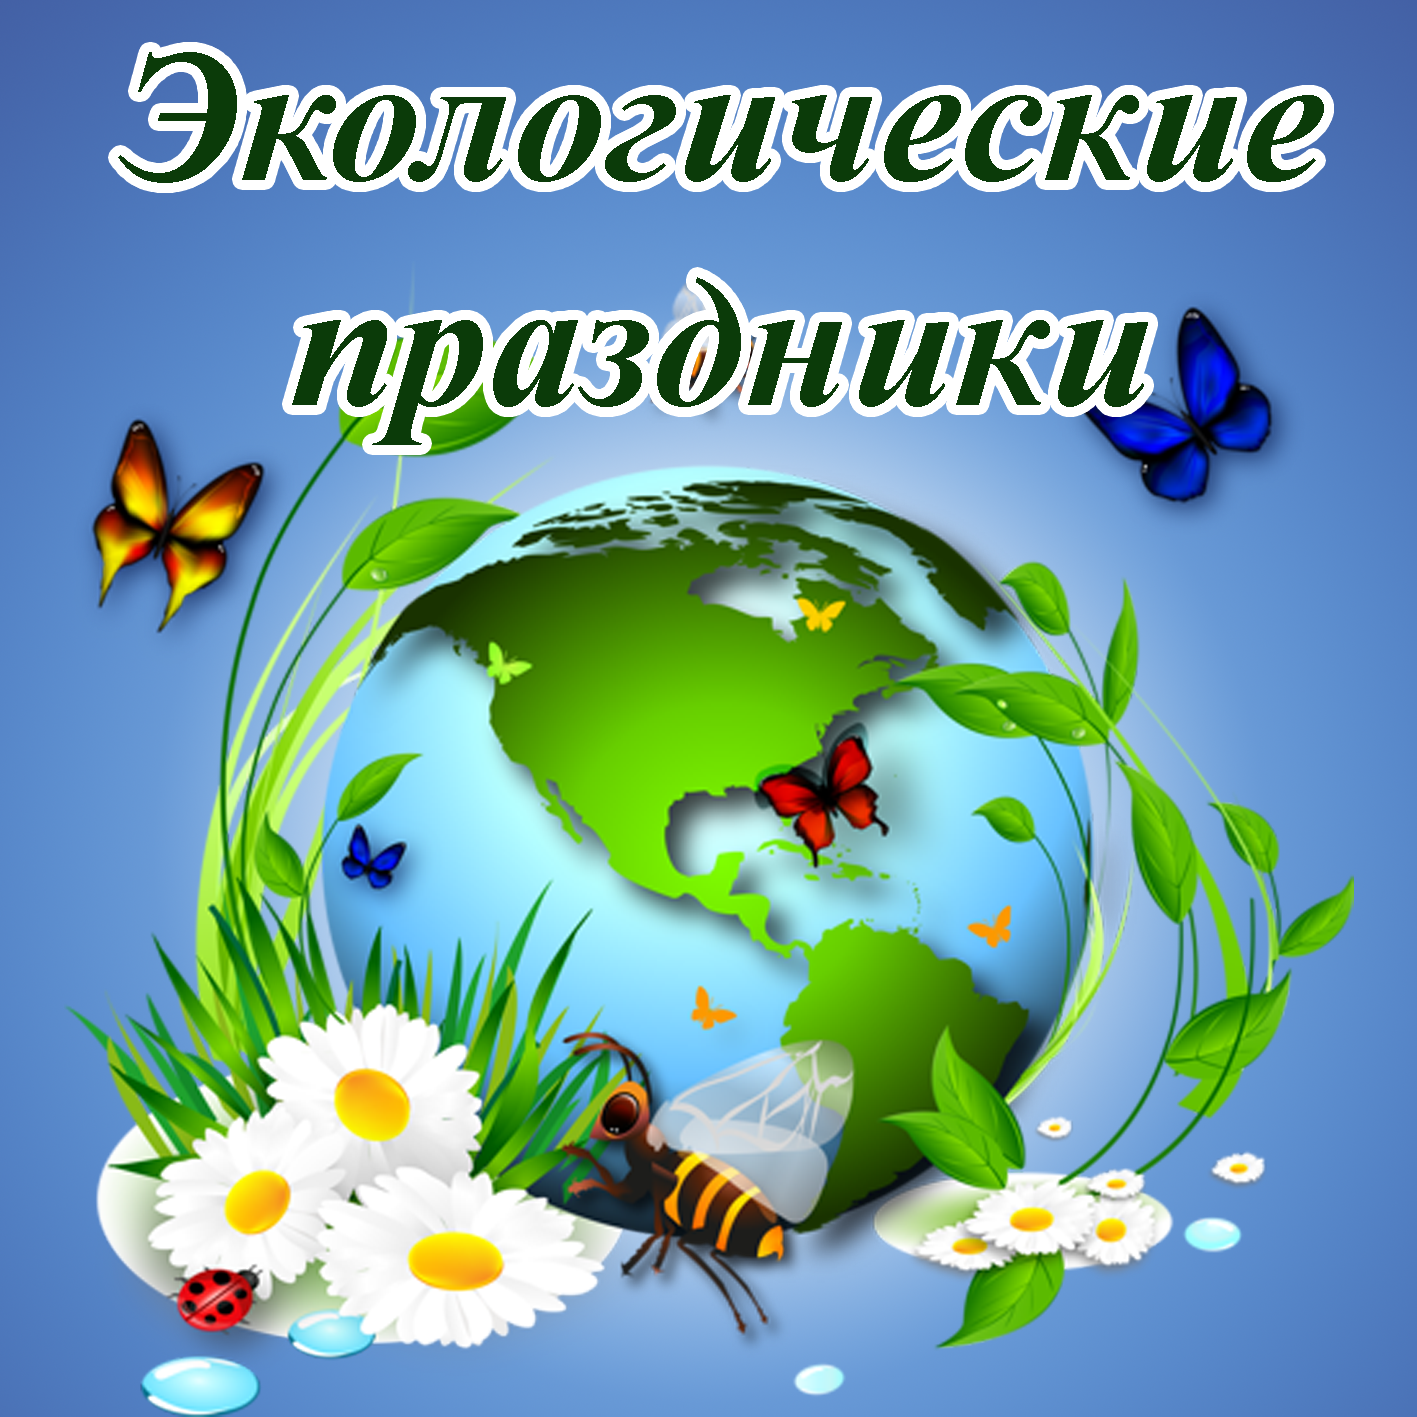 Экологический календарь. Экологически праздник. Праздники по экологии. Календарь экологических праздников для детей.